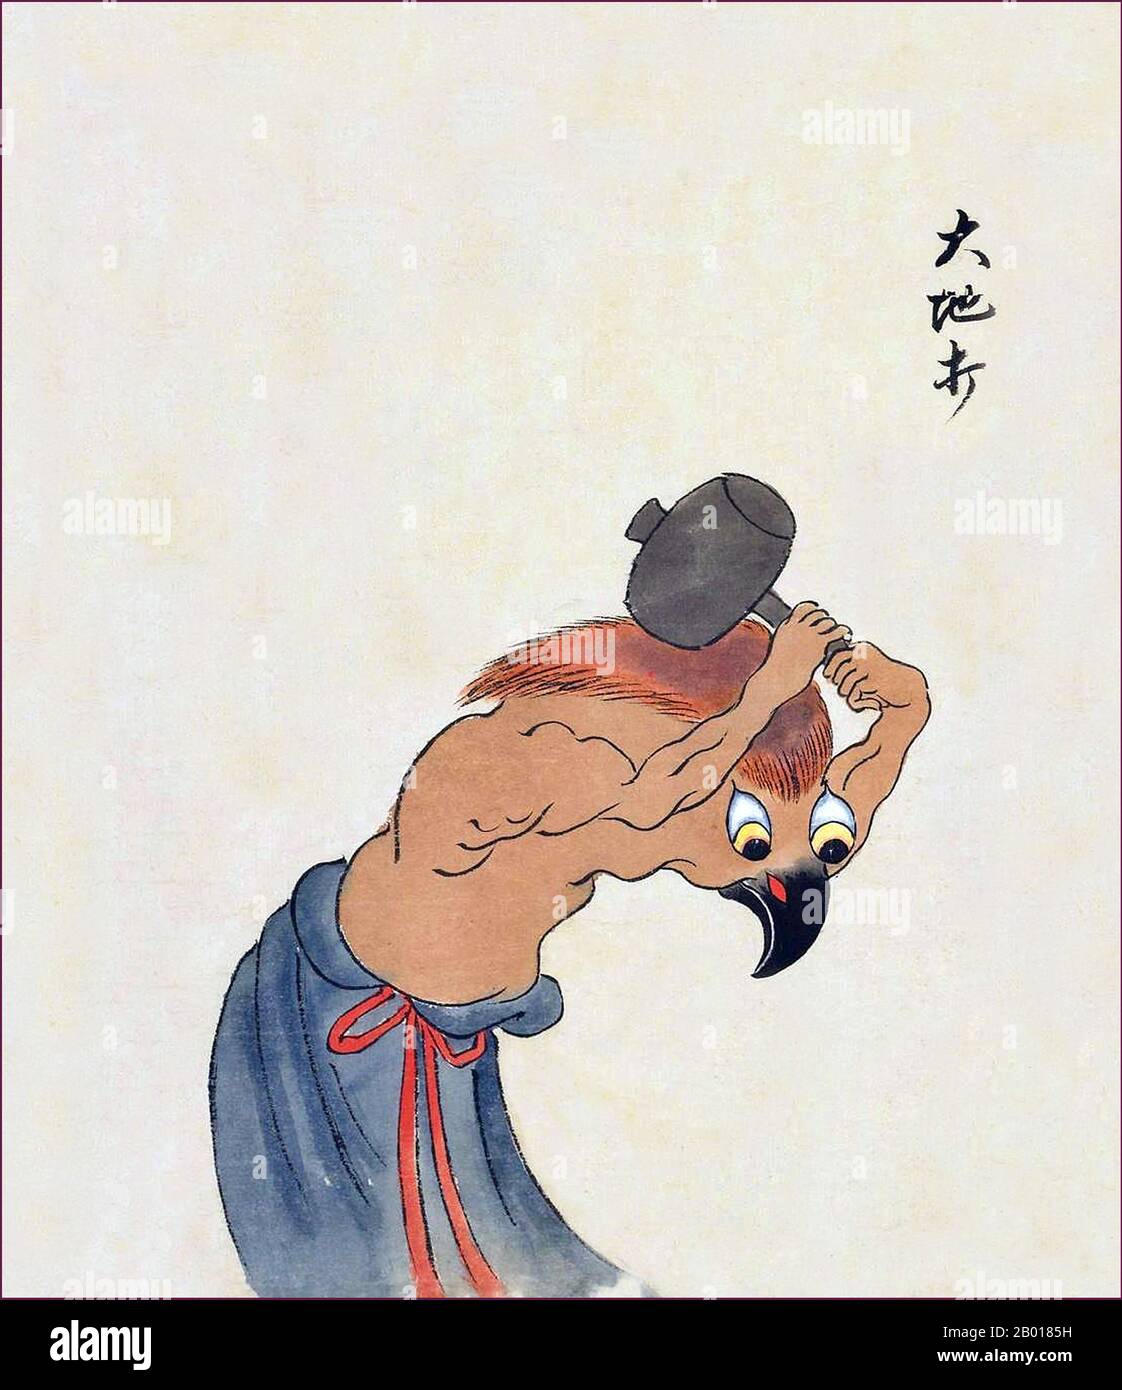 Japon : le Daichiuchi est un monstre au visage d'oiseau brandissant un maillet.Du Bakemono Zukushi Monster Scroll, époque Edo (1603-1868), 18th-19th siècle.Le bakemono Zukushi Handscroll, peint dans la période Edo (18th-19th siècle) par un artiste inconnu, dépeint 24 monstres traditionnels qui hantent traditionnellement des gens et des localités au Japon. Banque D'Images